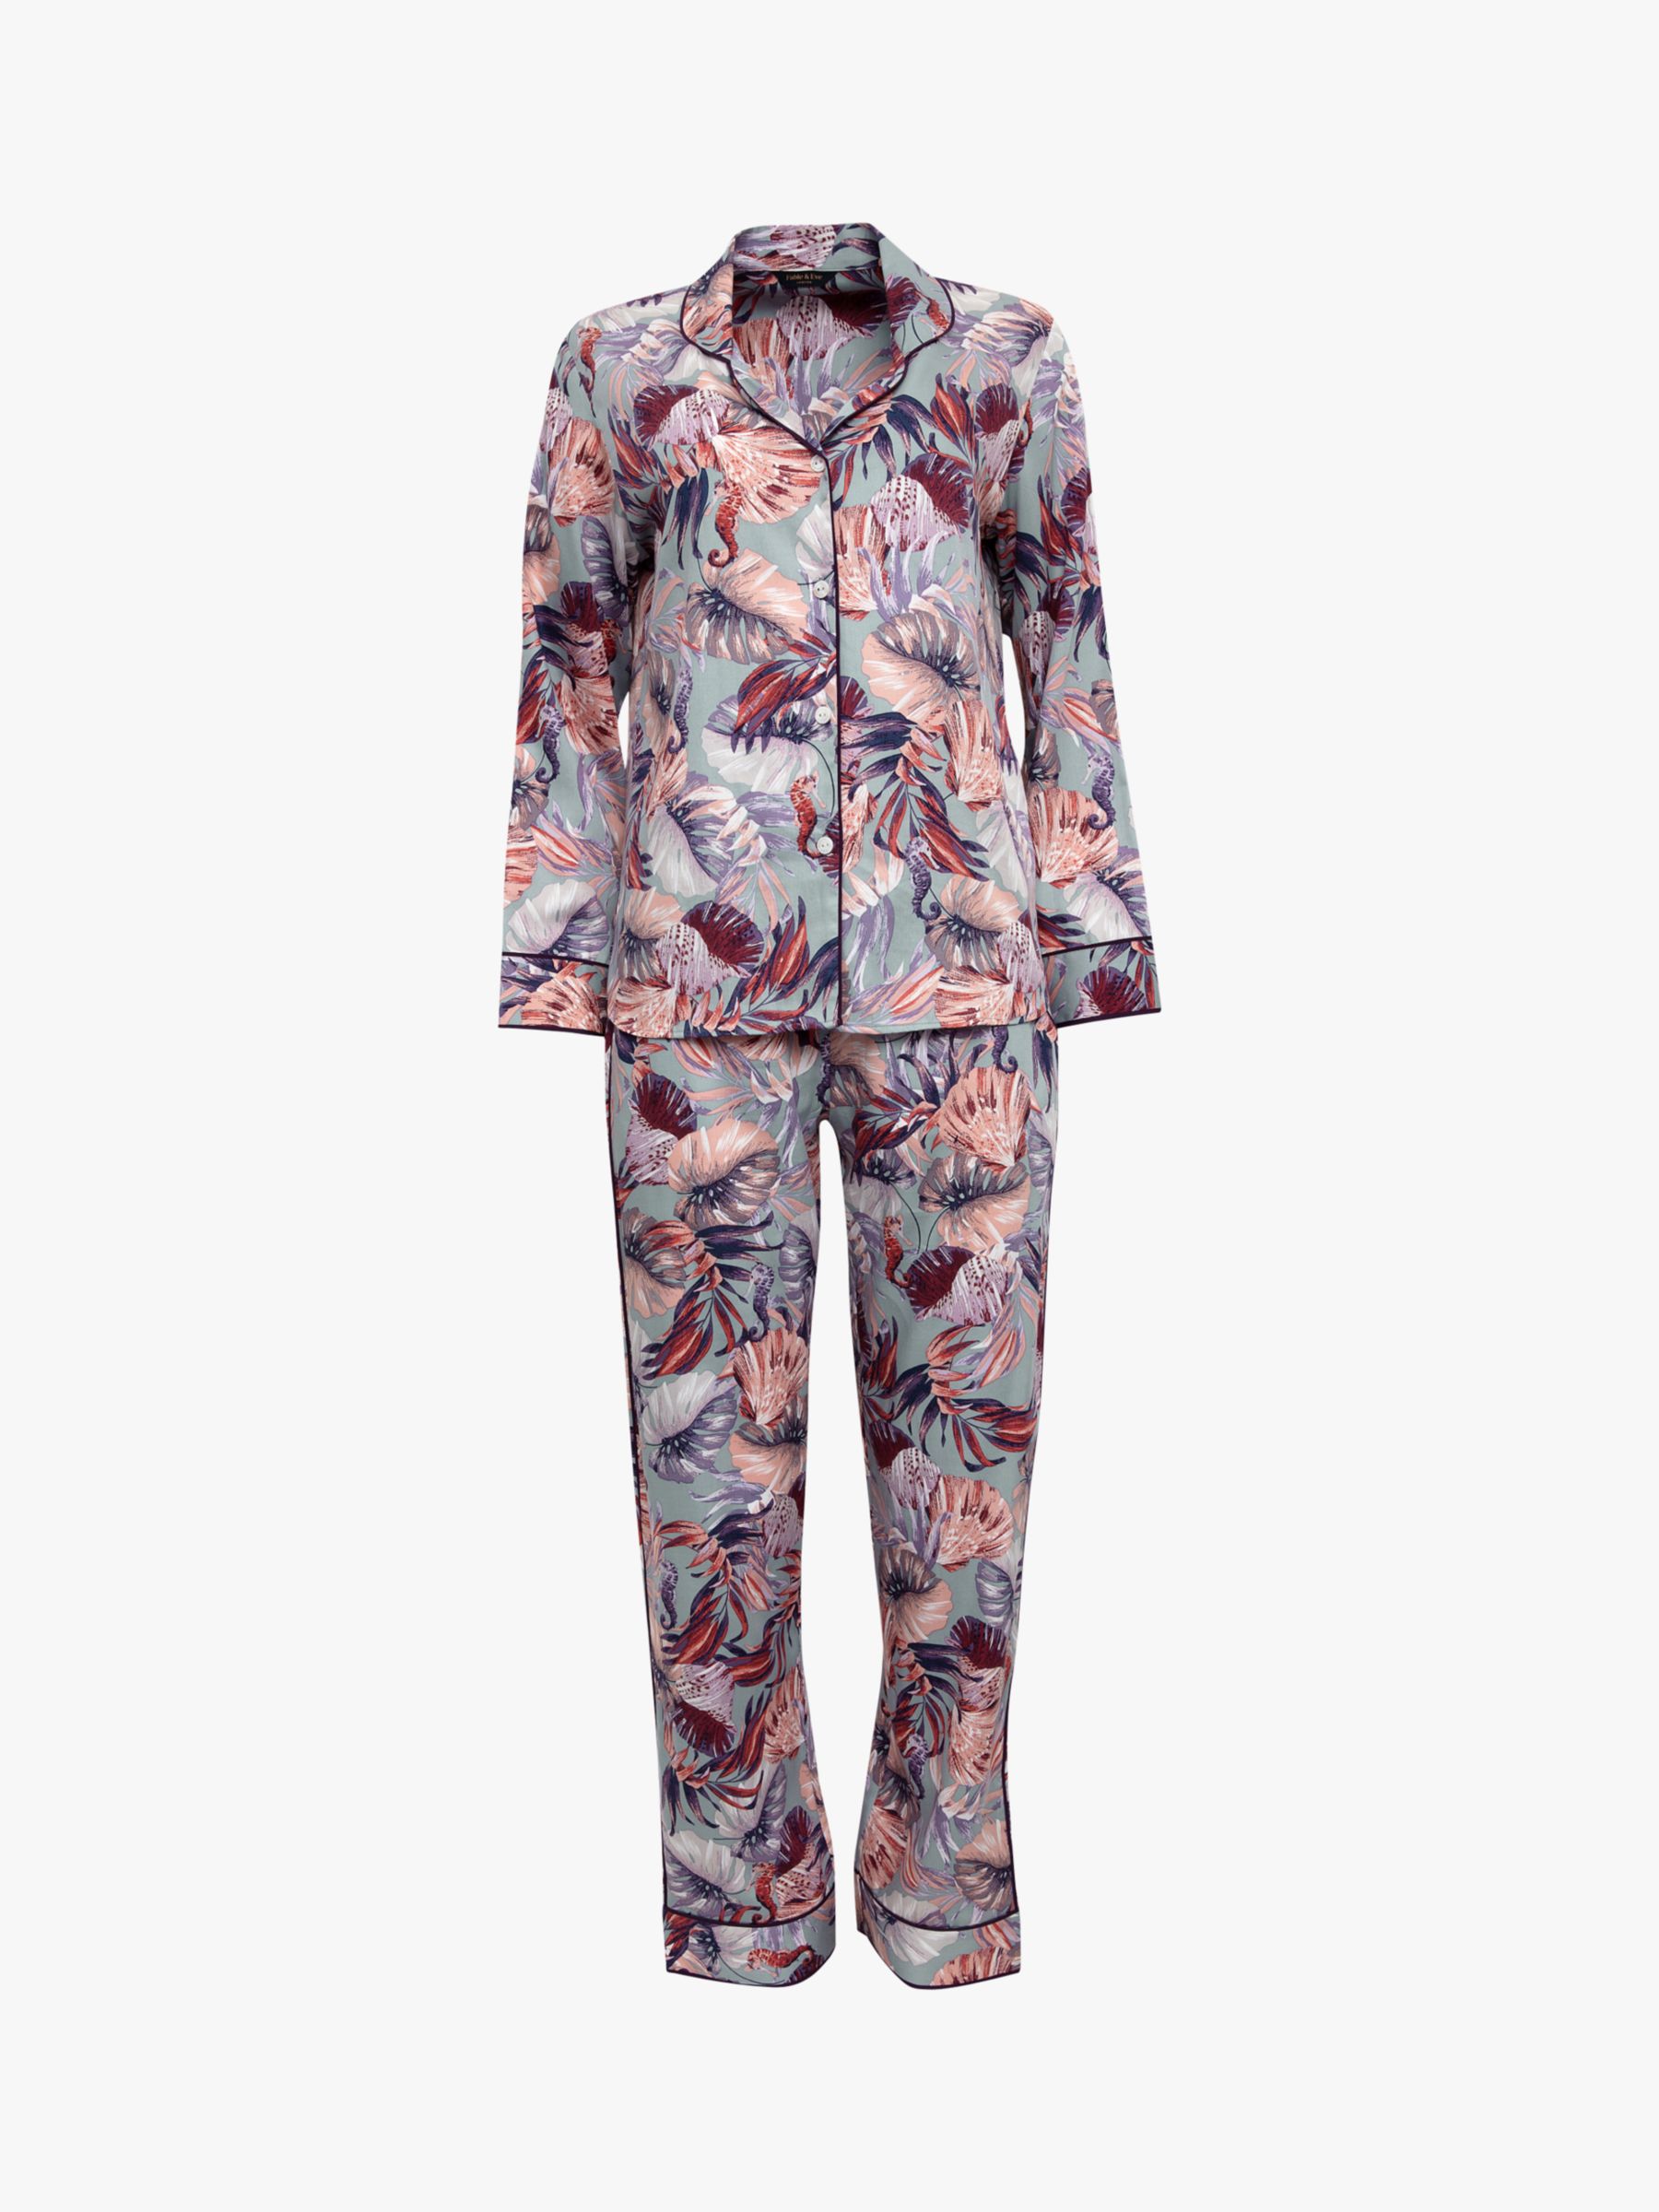 Buy Fable & Eve Wimbledon Sea Horse Print Pyjamas, Lilac Online at johnlewis.com